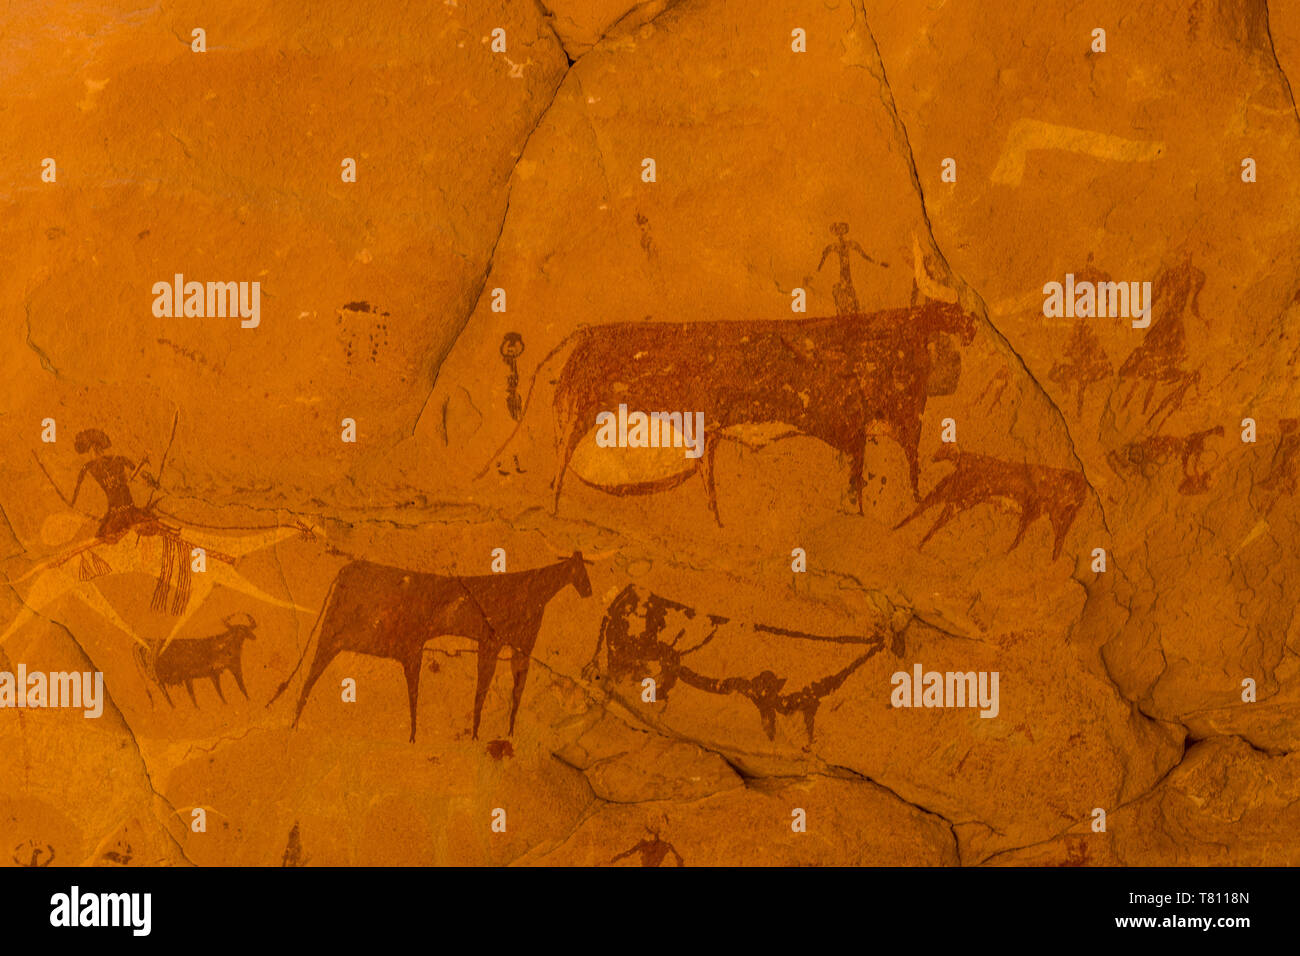 Les peintures rupestres, l'Ennedi Plateau, Site du patrimoine mondial de l'Ennedi, Tchad, Afrique, région Banque D'Images